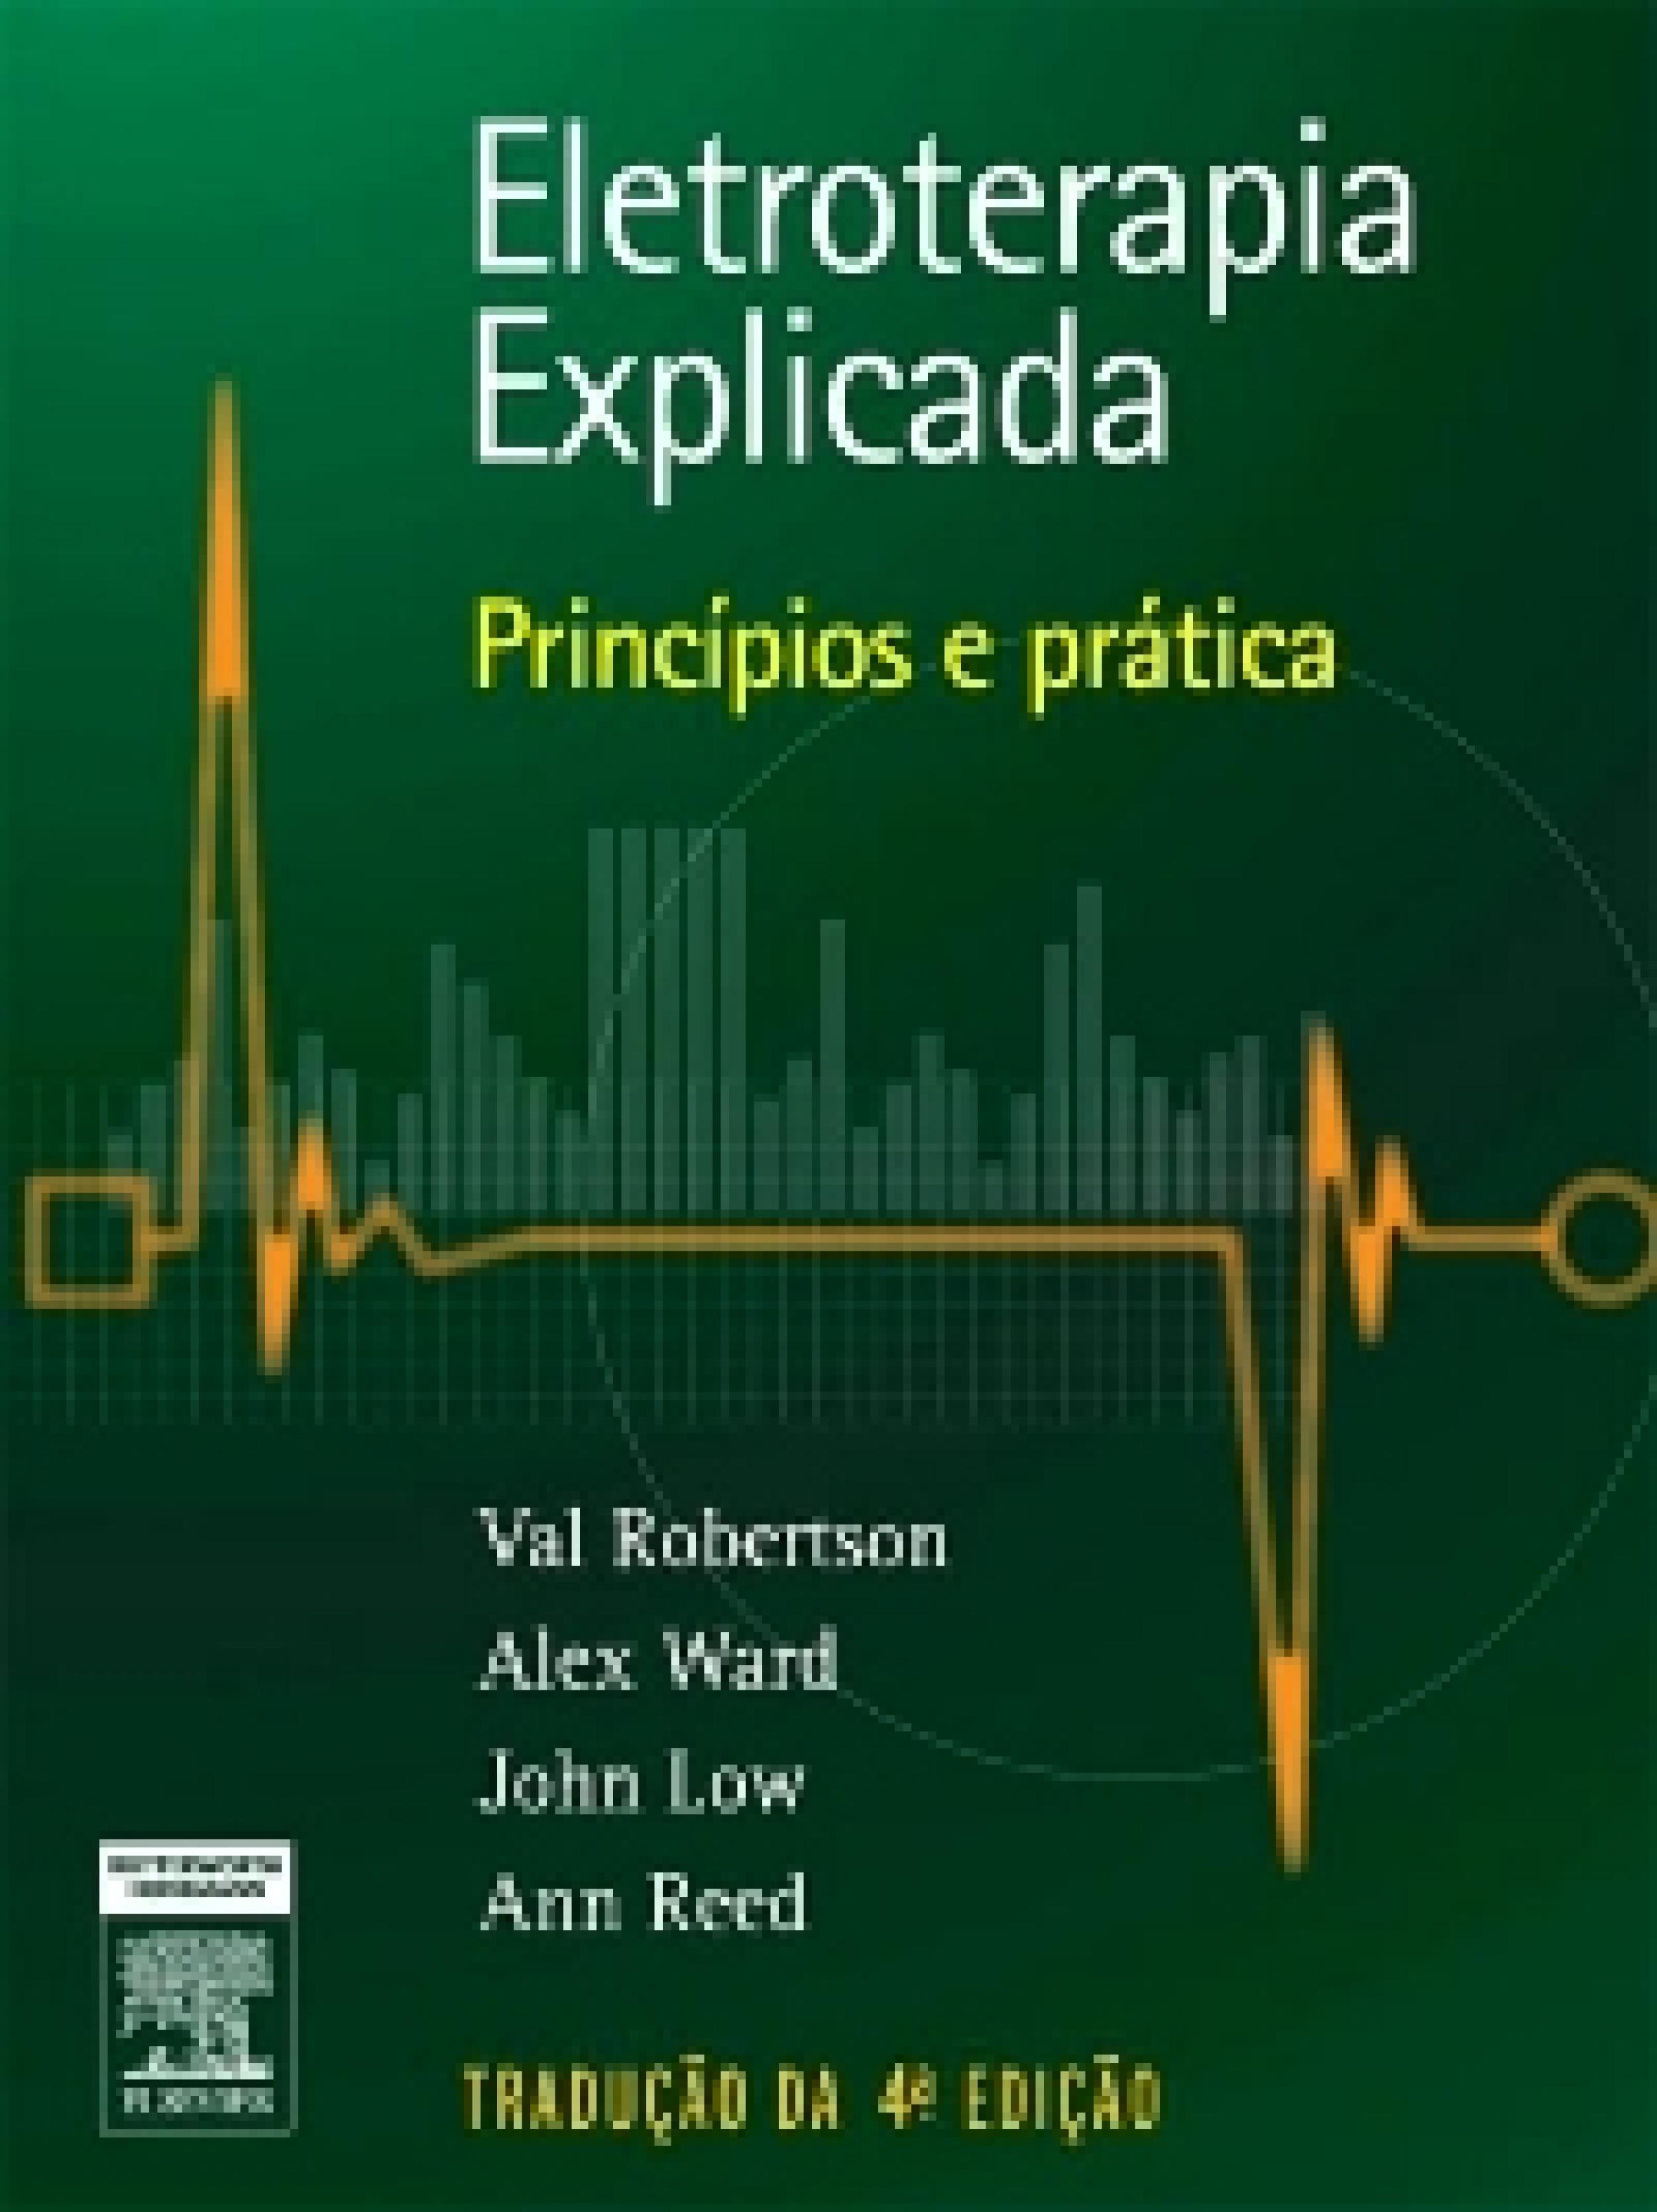 libro de biofisica medica pdf download